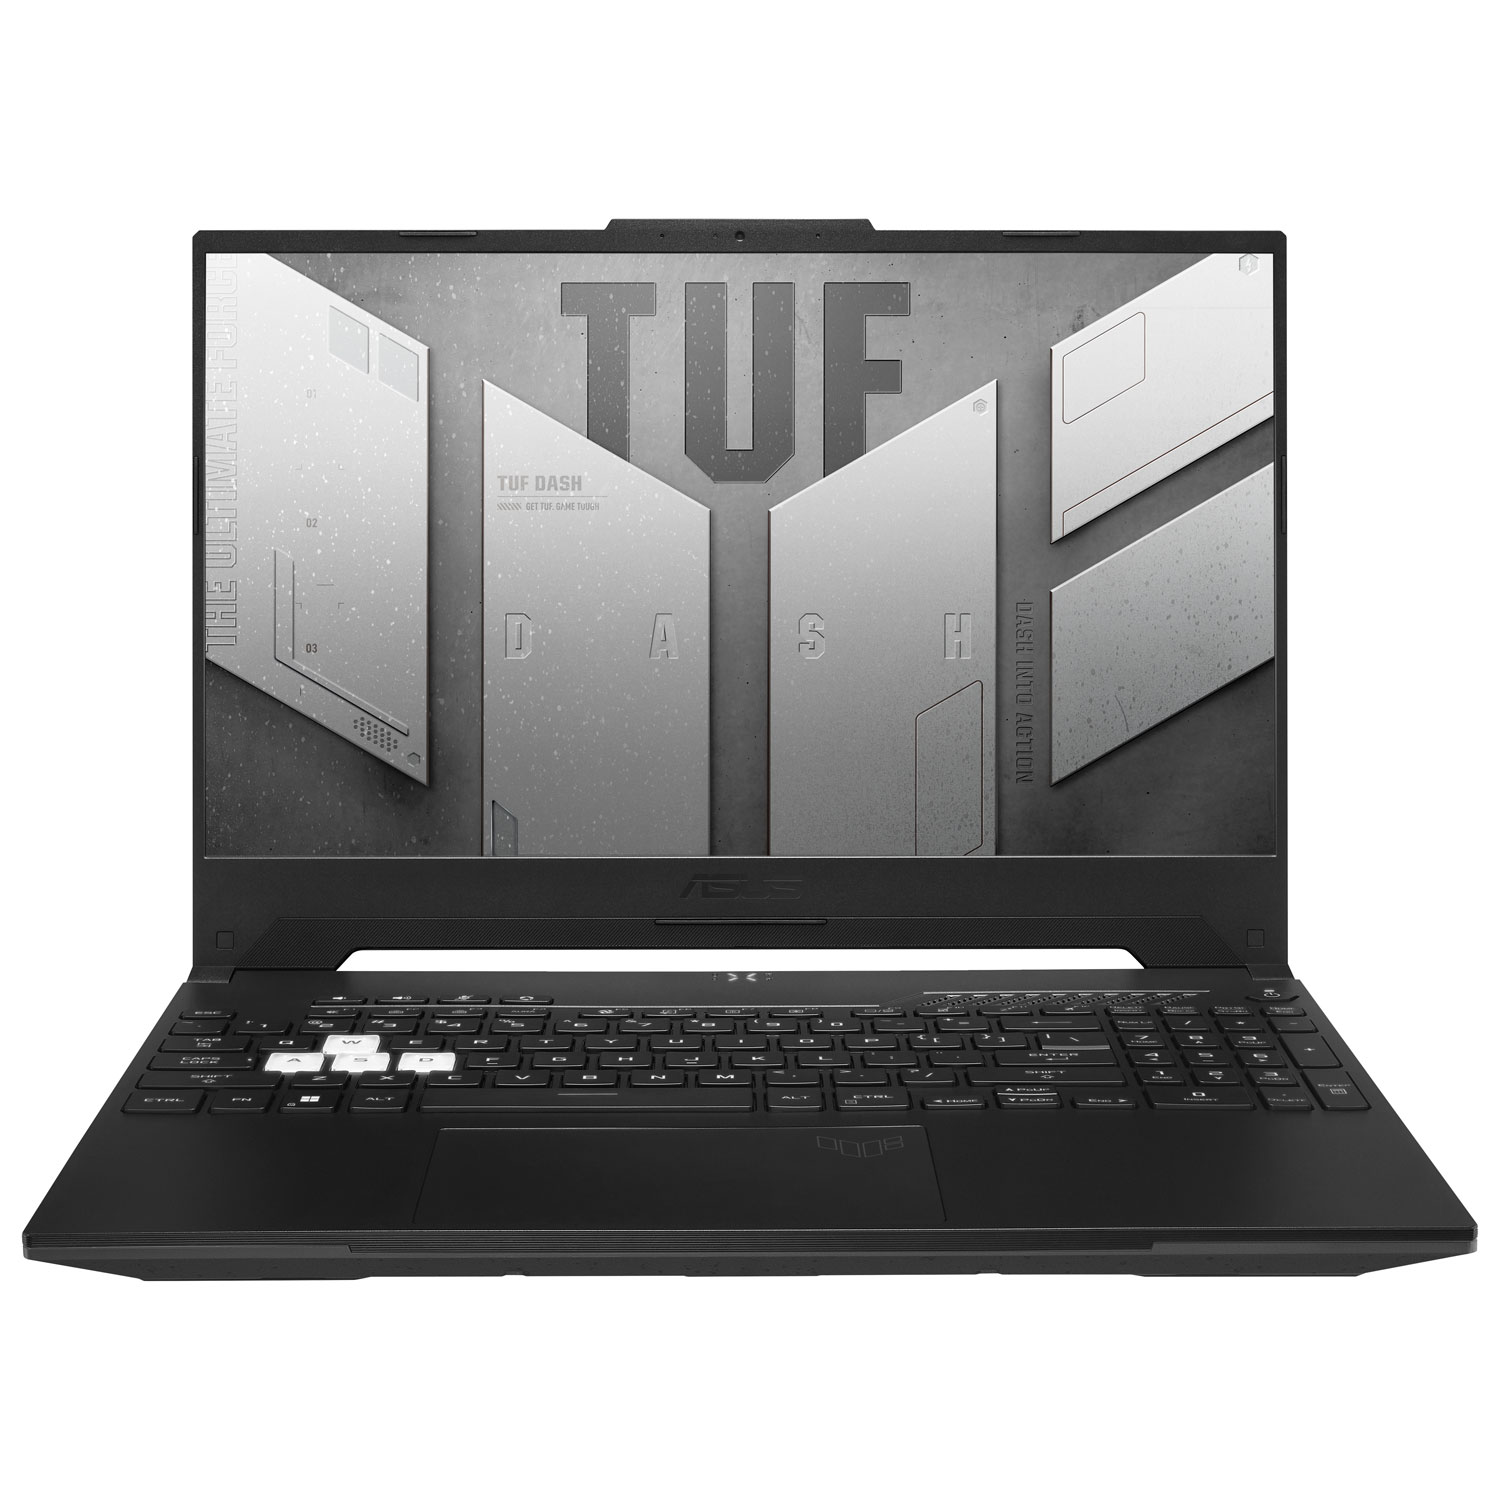 ASUS TUF Dash 15 15.6" Gaming Laptop (Intel Core i7-12650H/512GB SSD/16GB RAM/GeForce RTX 3070) - En